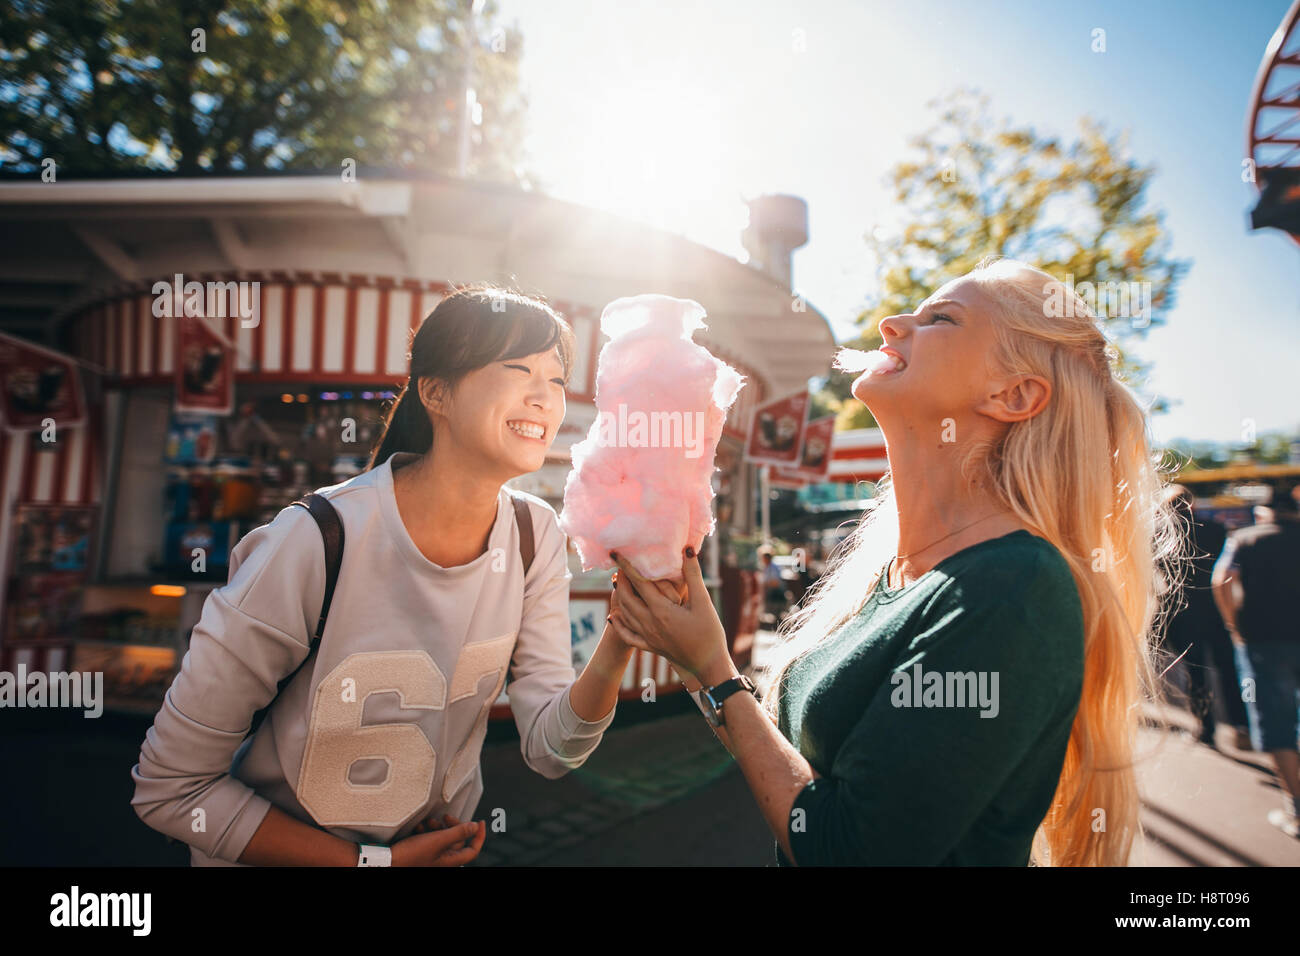 Shot of happy female friends in amusement park eating cotton candy. Deux jeunes femmes bénéficiant d'une journée au parc d'amusement. Banque D'Images